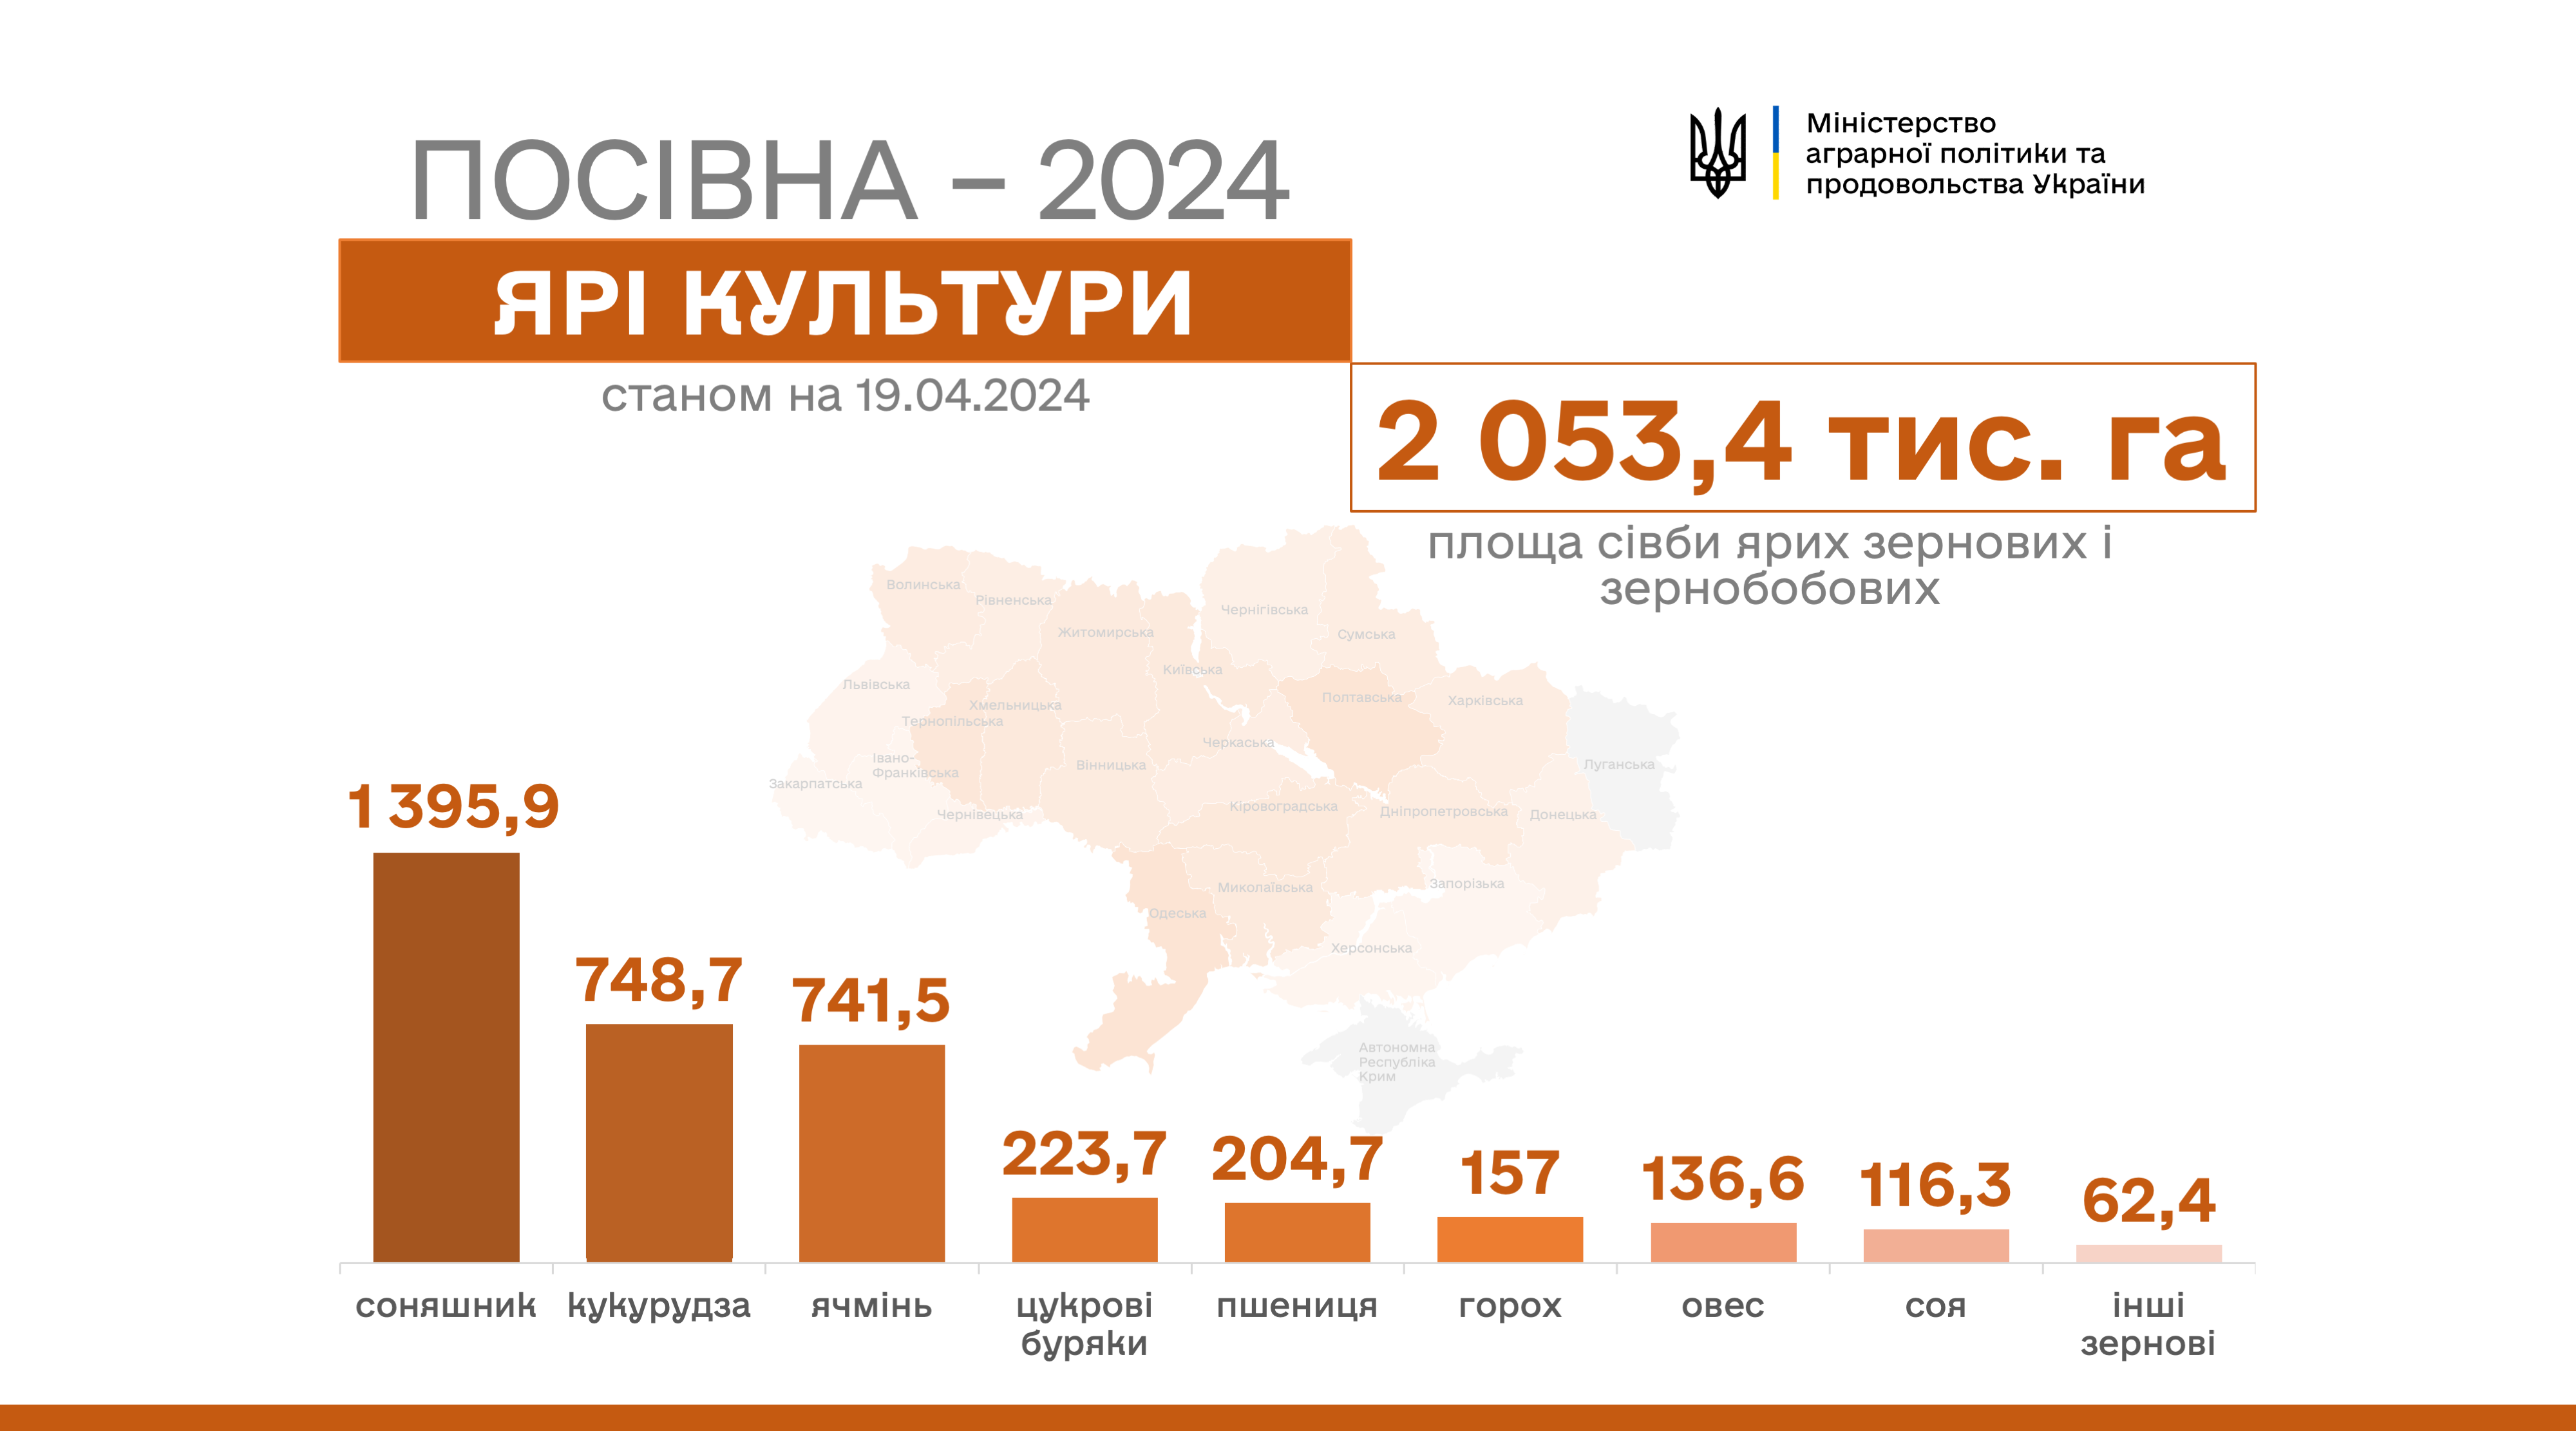 В Україні засіяно вже понад 2 млн гектарів ярих зернових і зернобобових